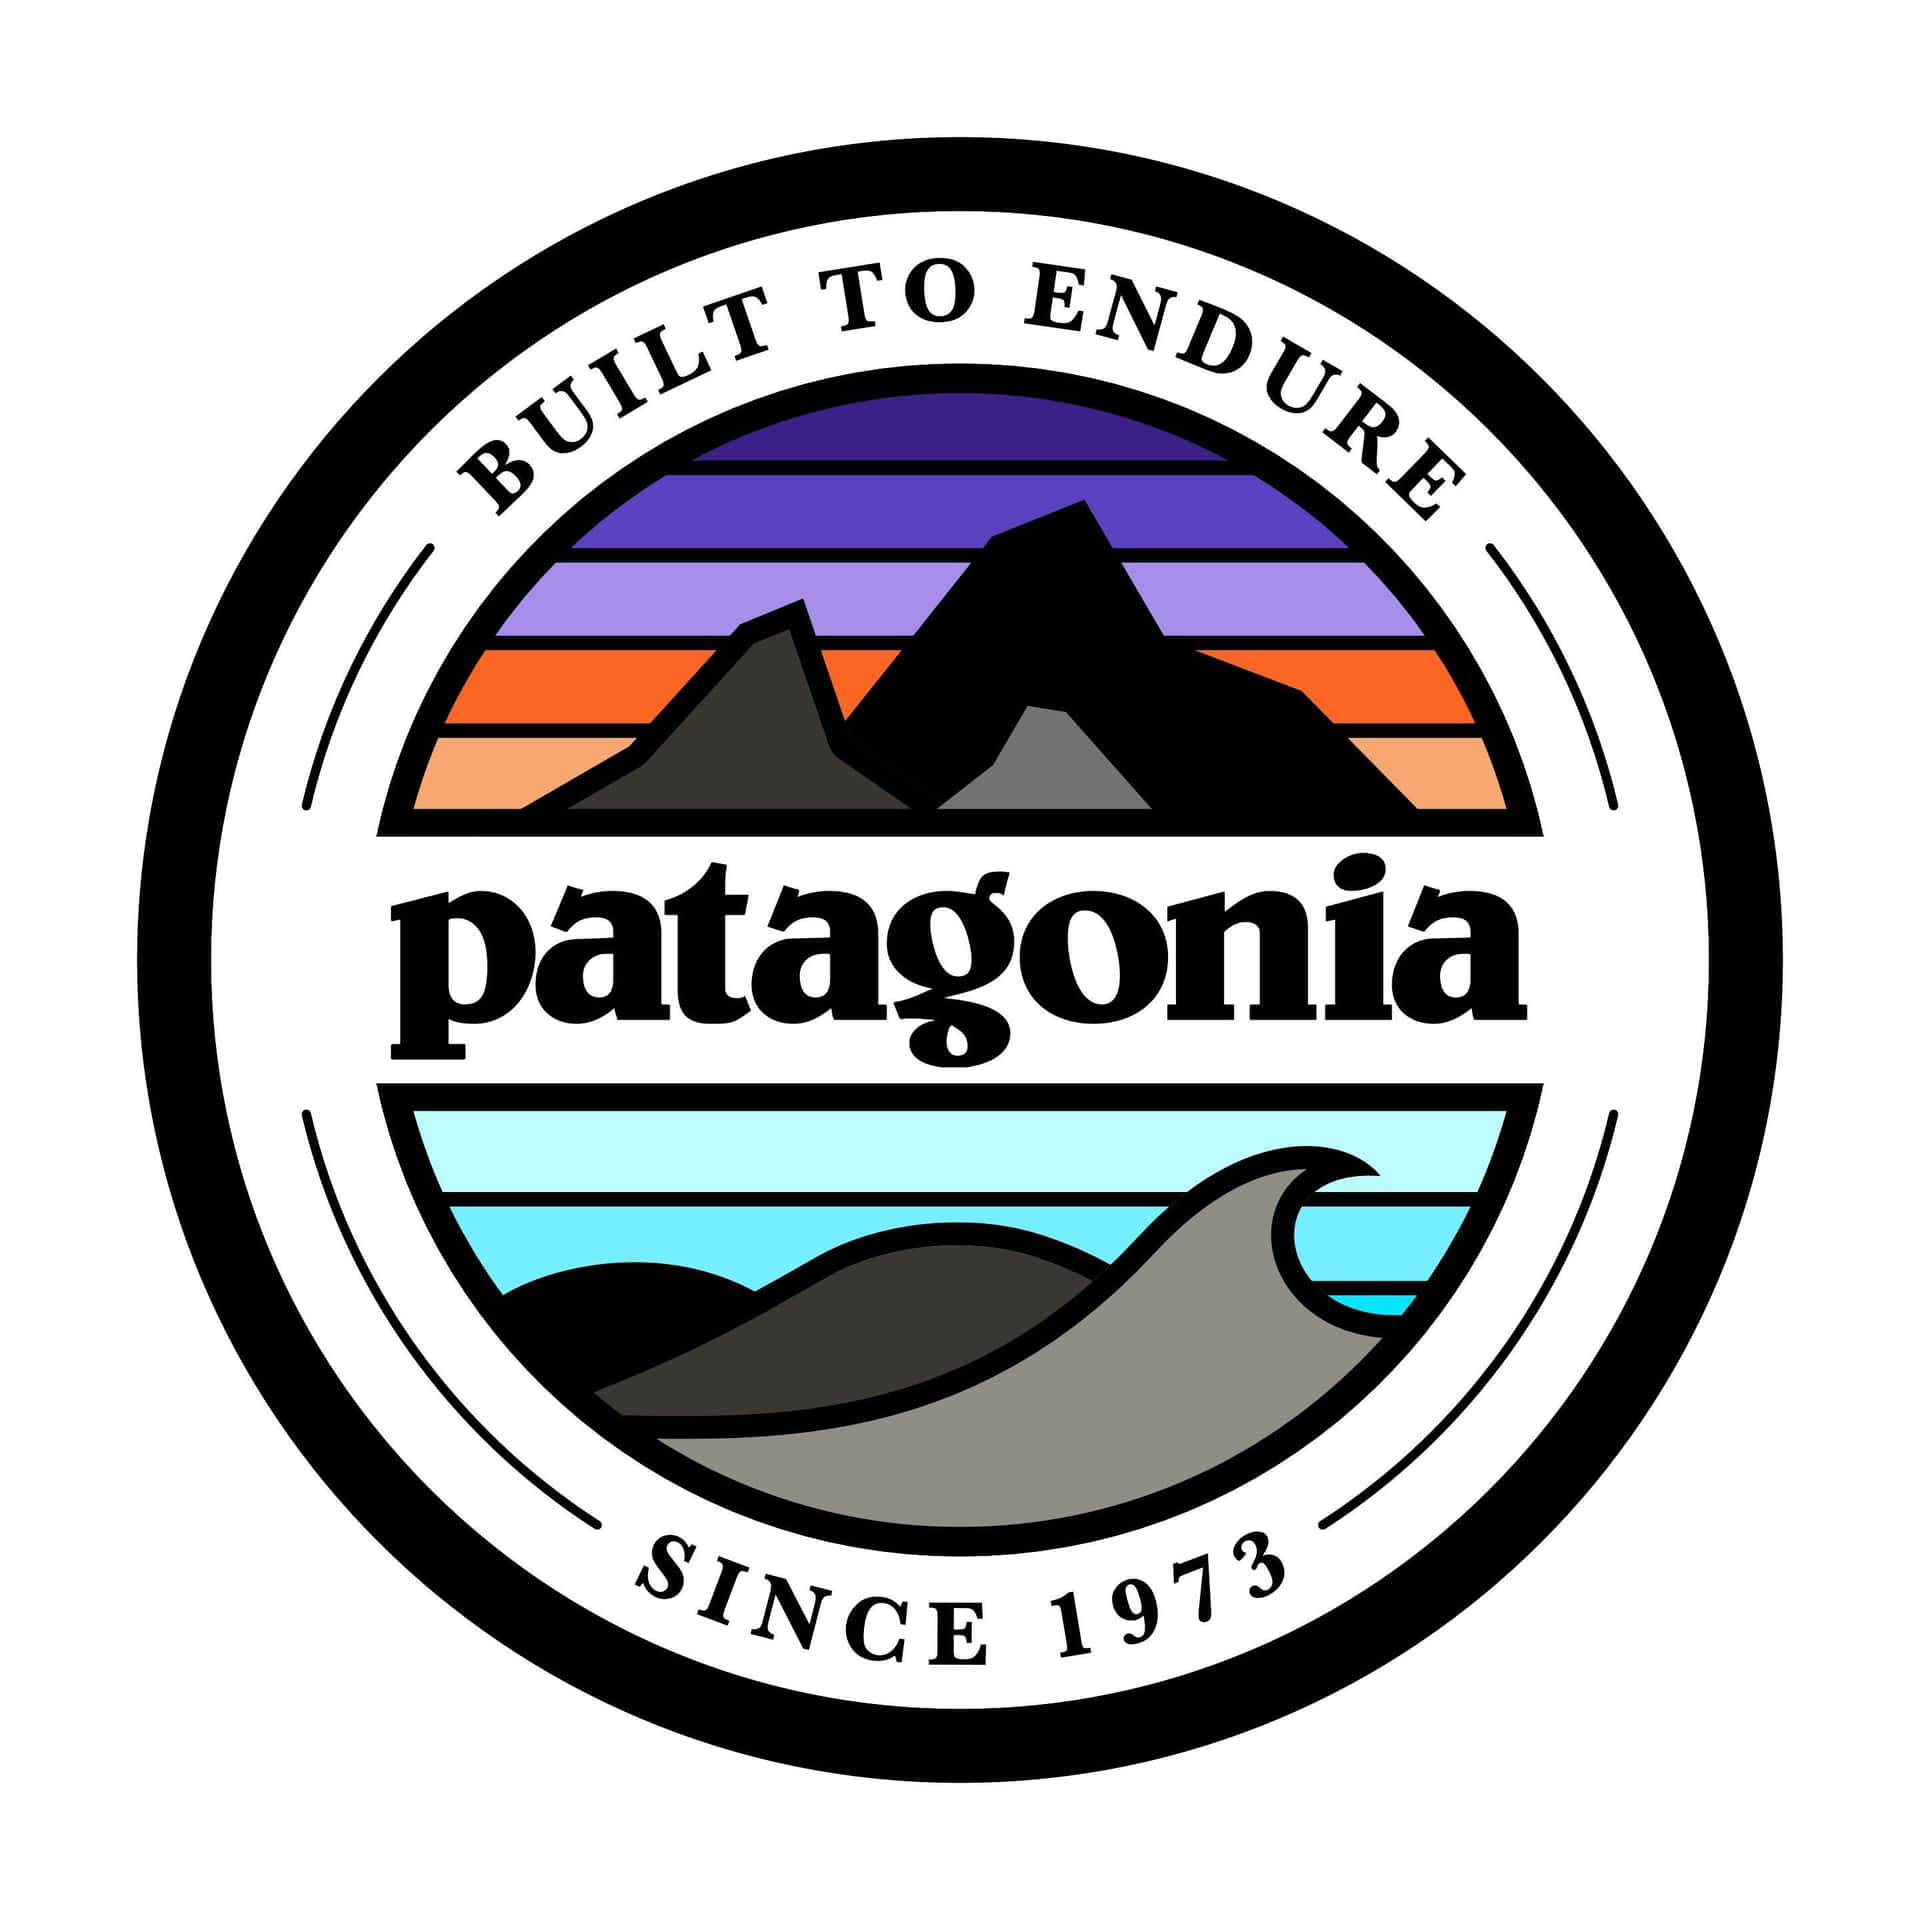 Patagonia Logo Background